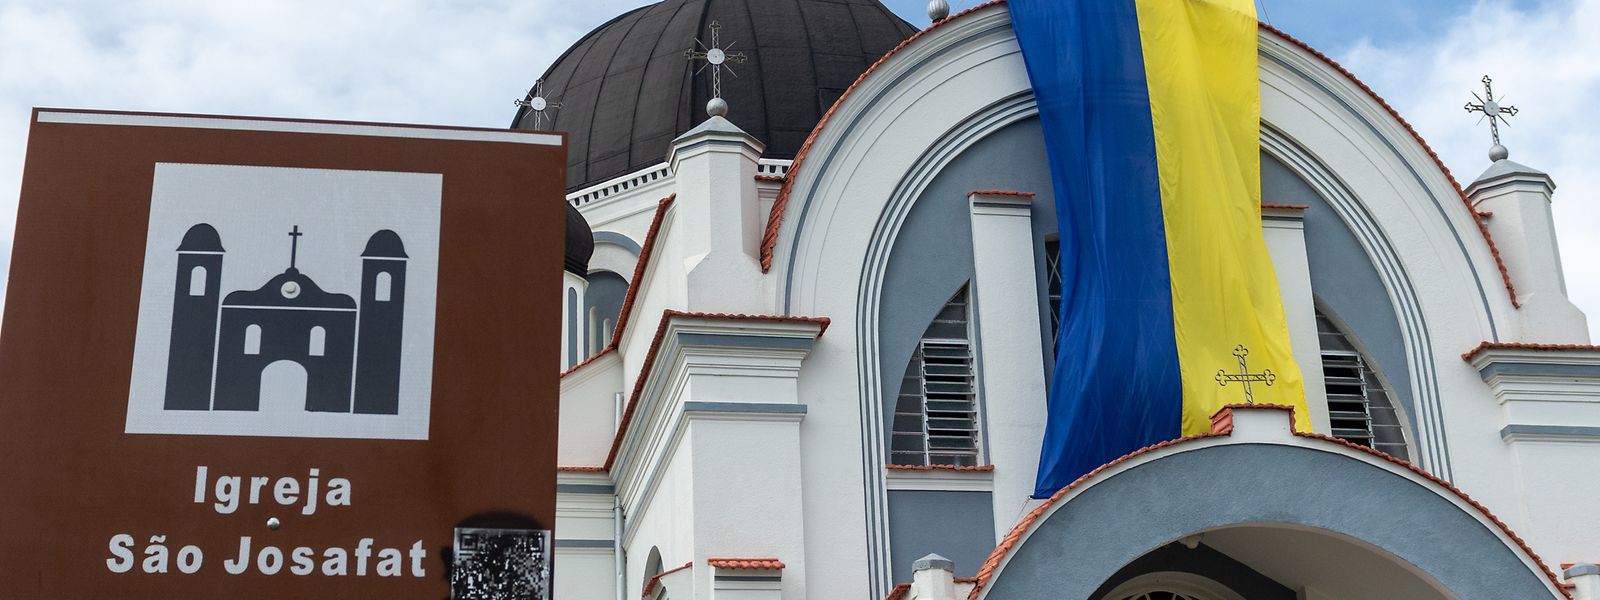 Eine Flagge der Ukraine hängt an der Kirche „Sao Josafat“ neben einem Schild mit dem Namen der Kirche auf Portugiesisch. Weil Prudentopolis abgelegen und die Religiosität stark ist, haben sich Kultur und Sprache der Migranten aus der Ukraine gehalten.